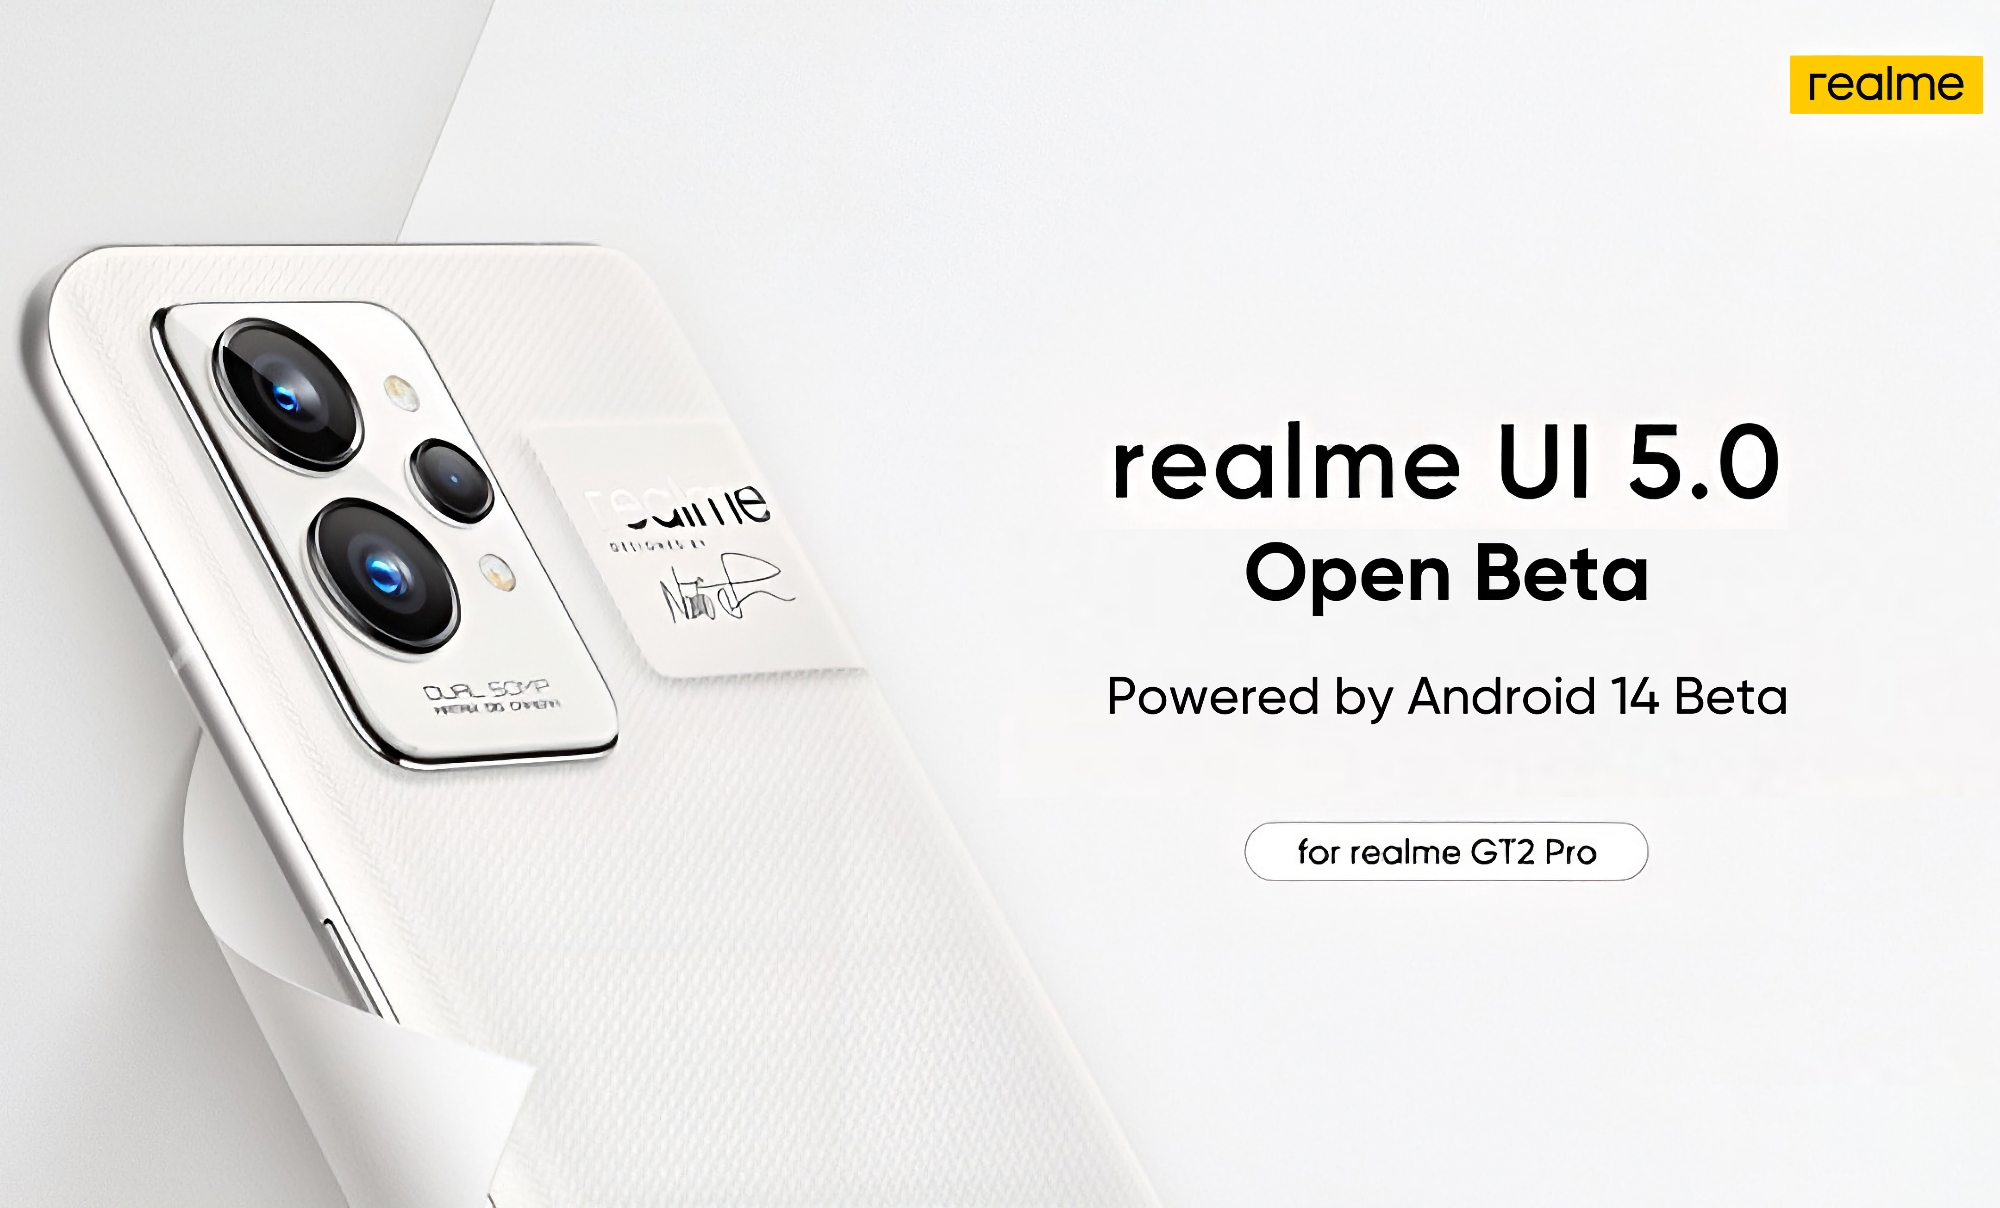 El realme GT 2 Pro ha recibido la beta de Android 14 con realme UI 5.0 shell